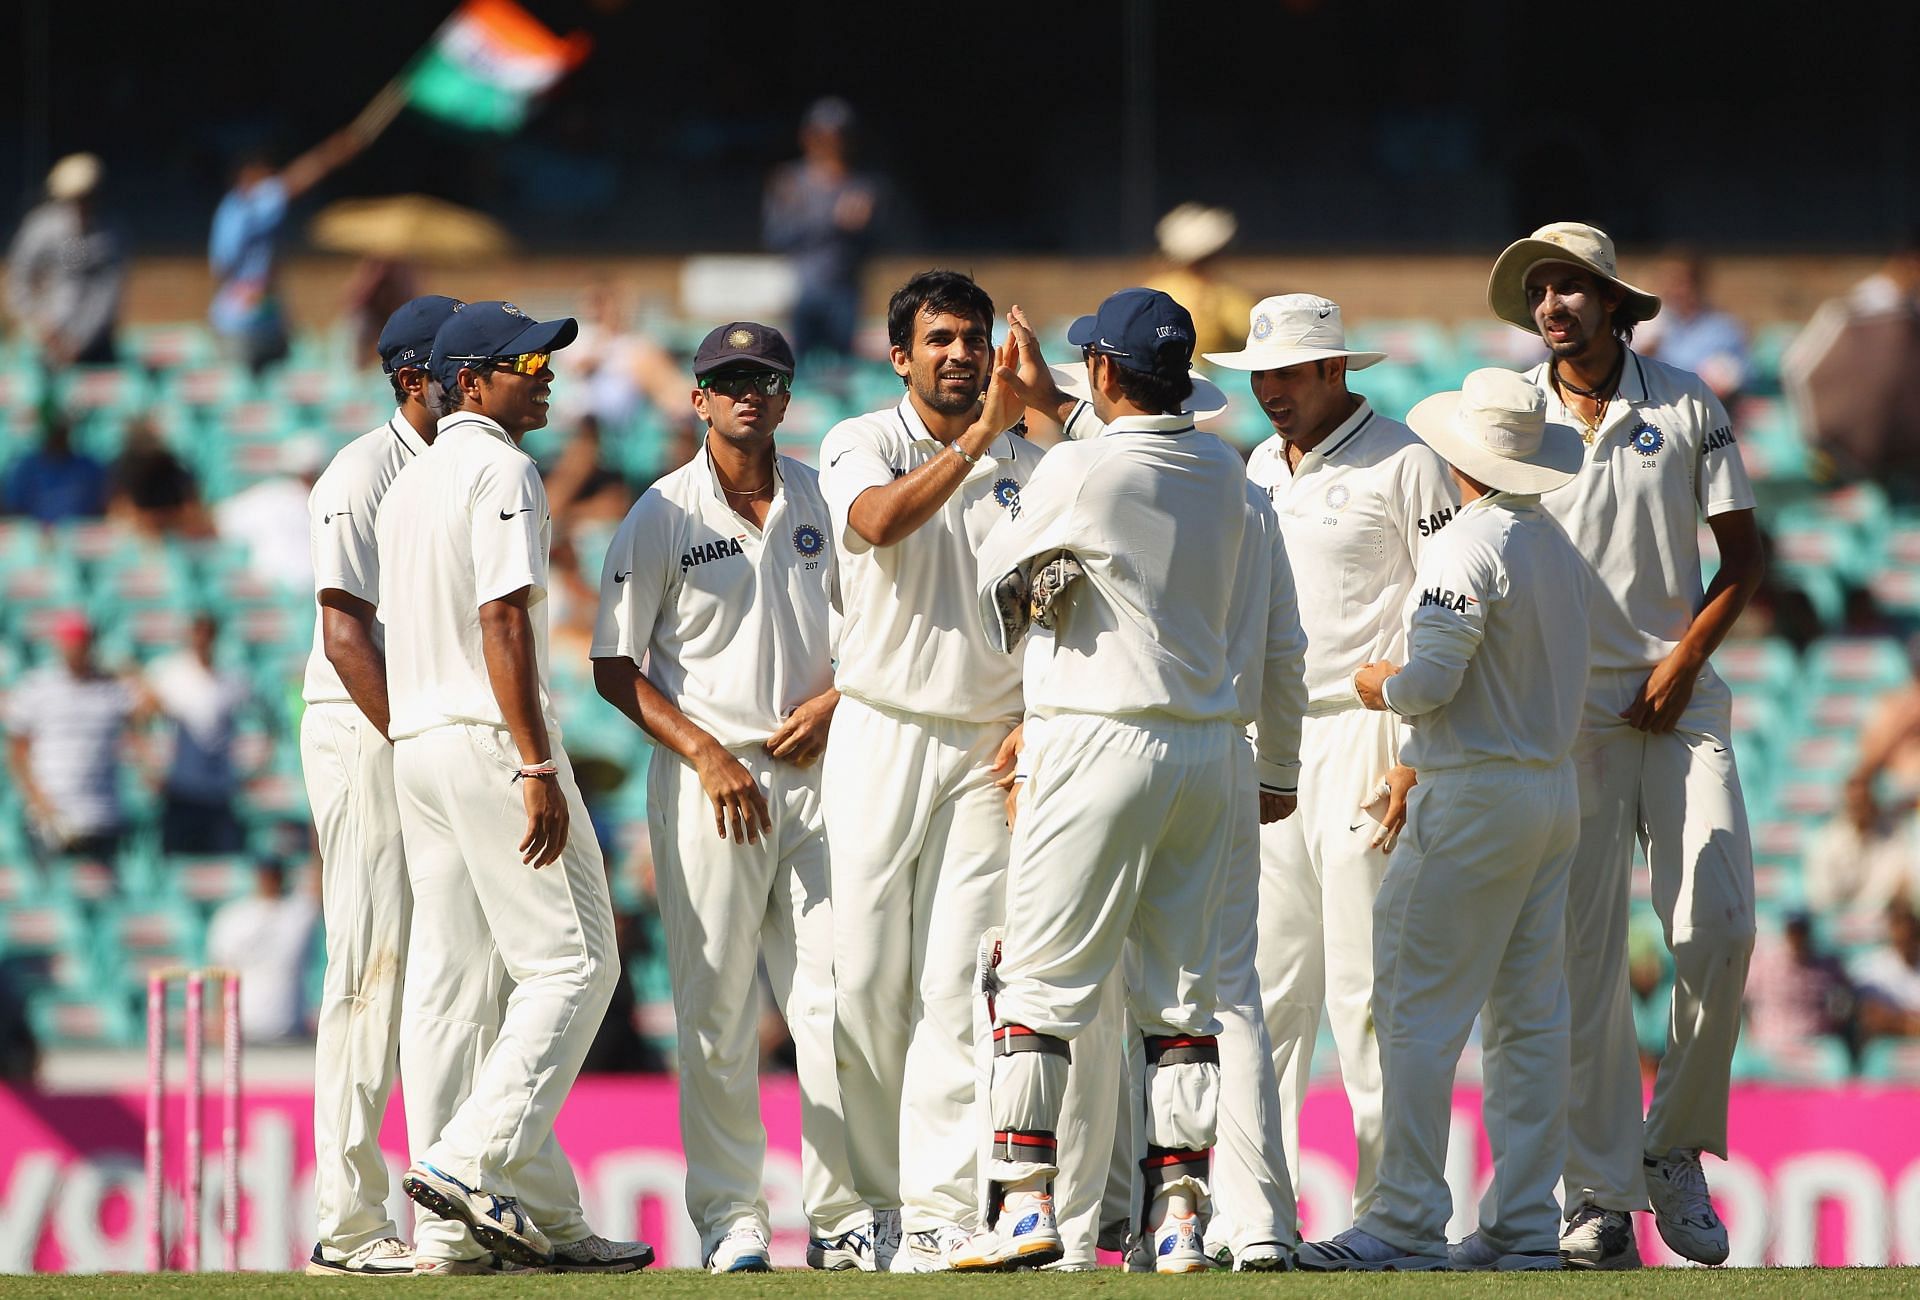 Australia v India - Second Test: Day 1